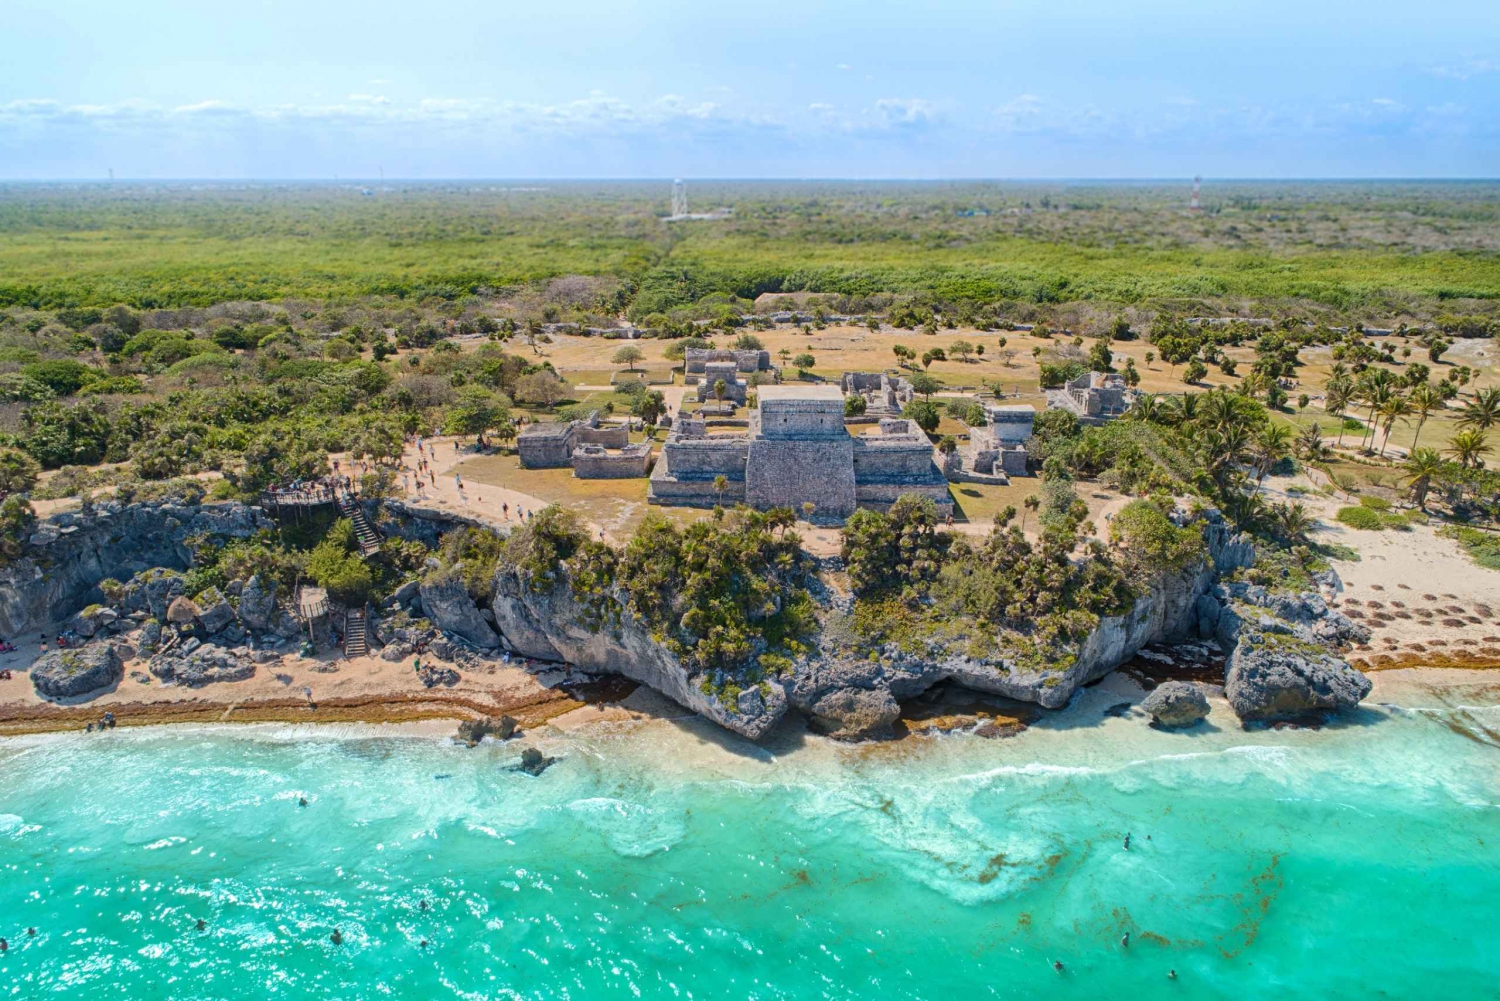 Desde Cancún: Excursión a Cobá, Cenote, Tulum y Playa del Carmen